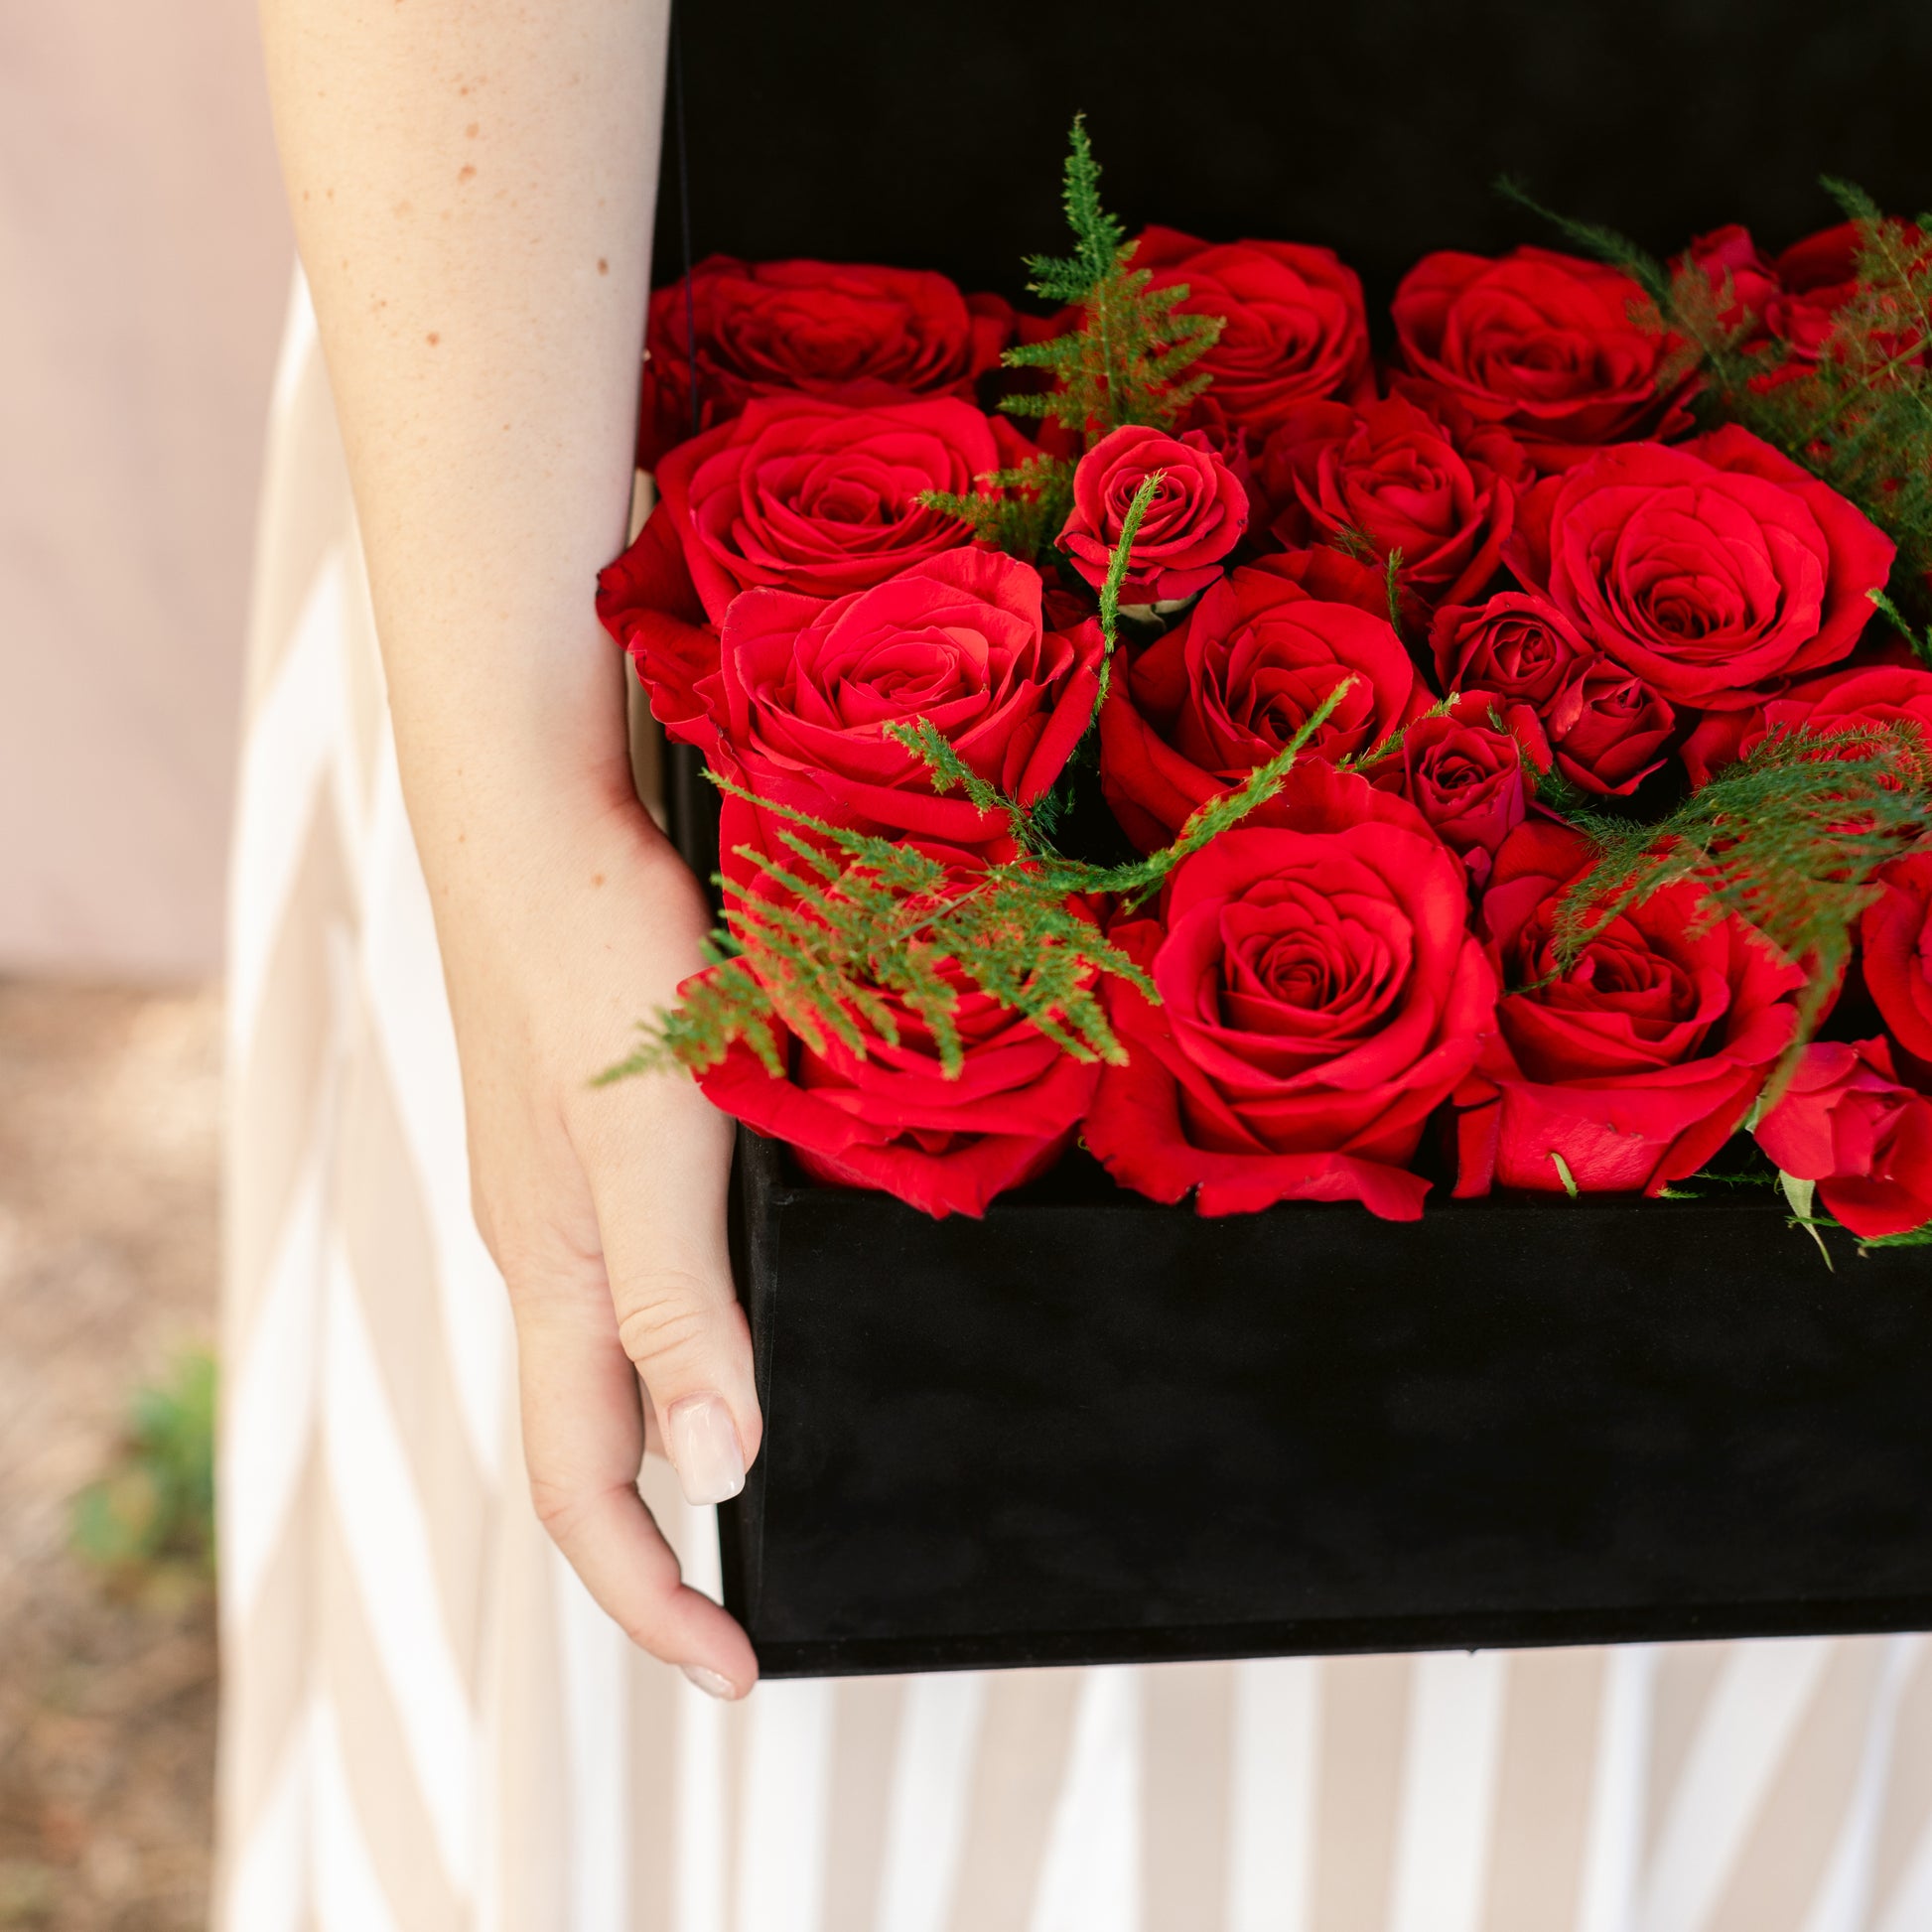 Cutia mare cu Trandafiri si Miniroze rosii - by Ana Macovei